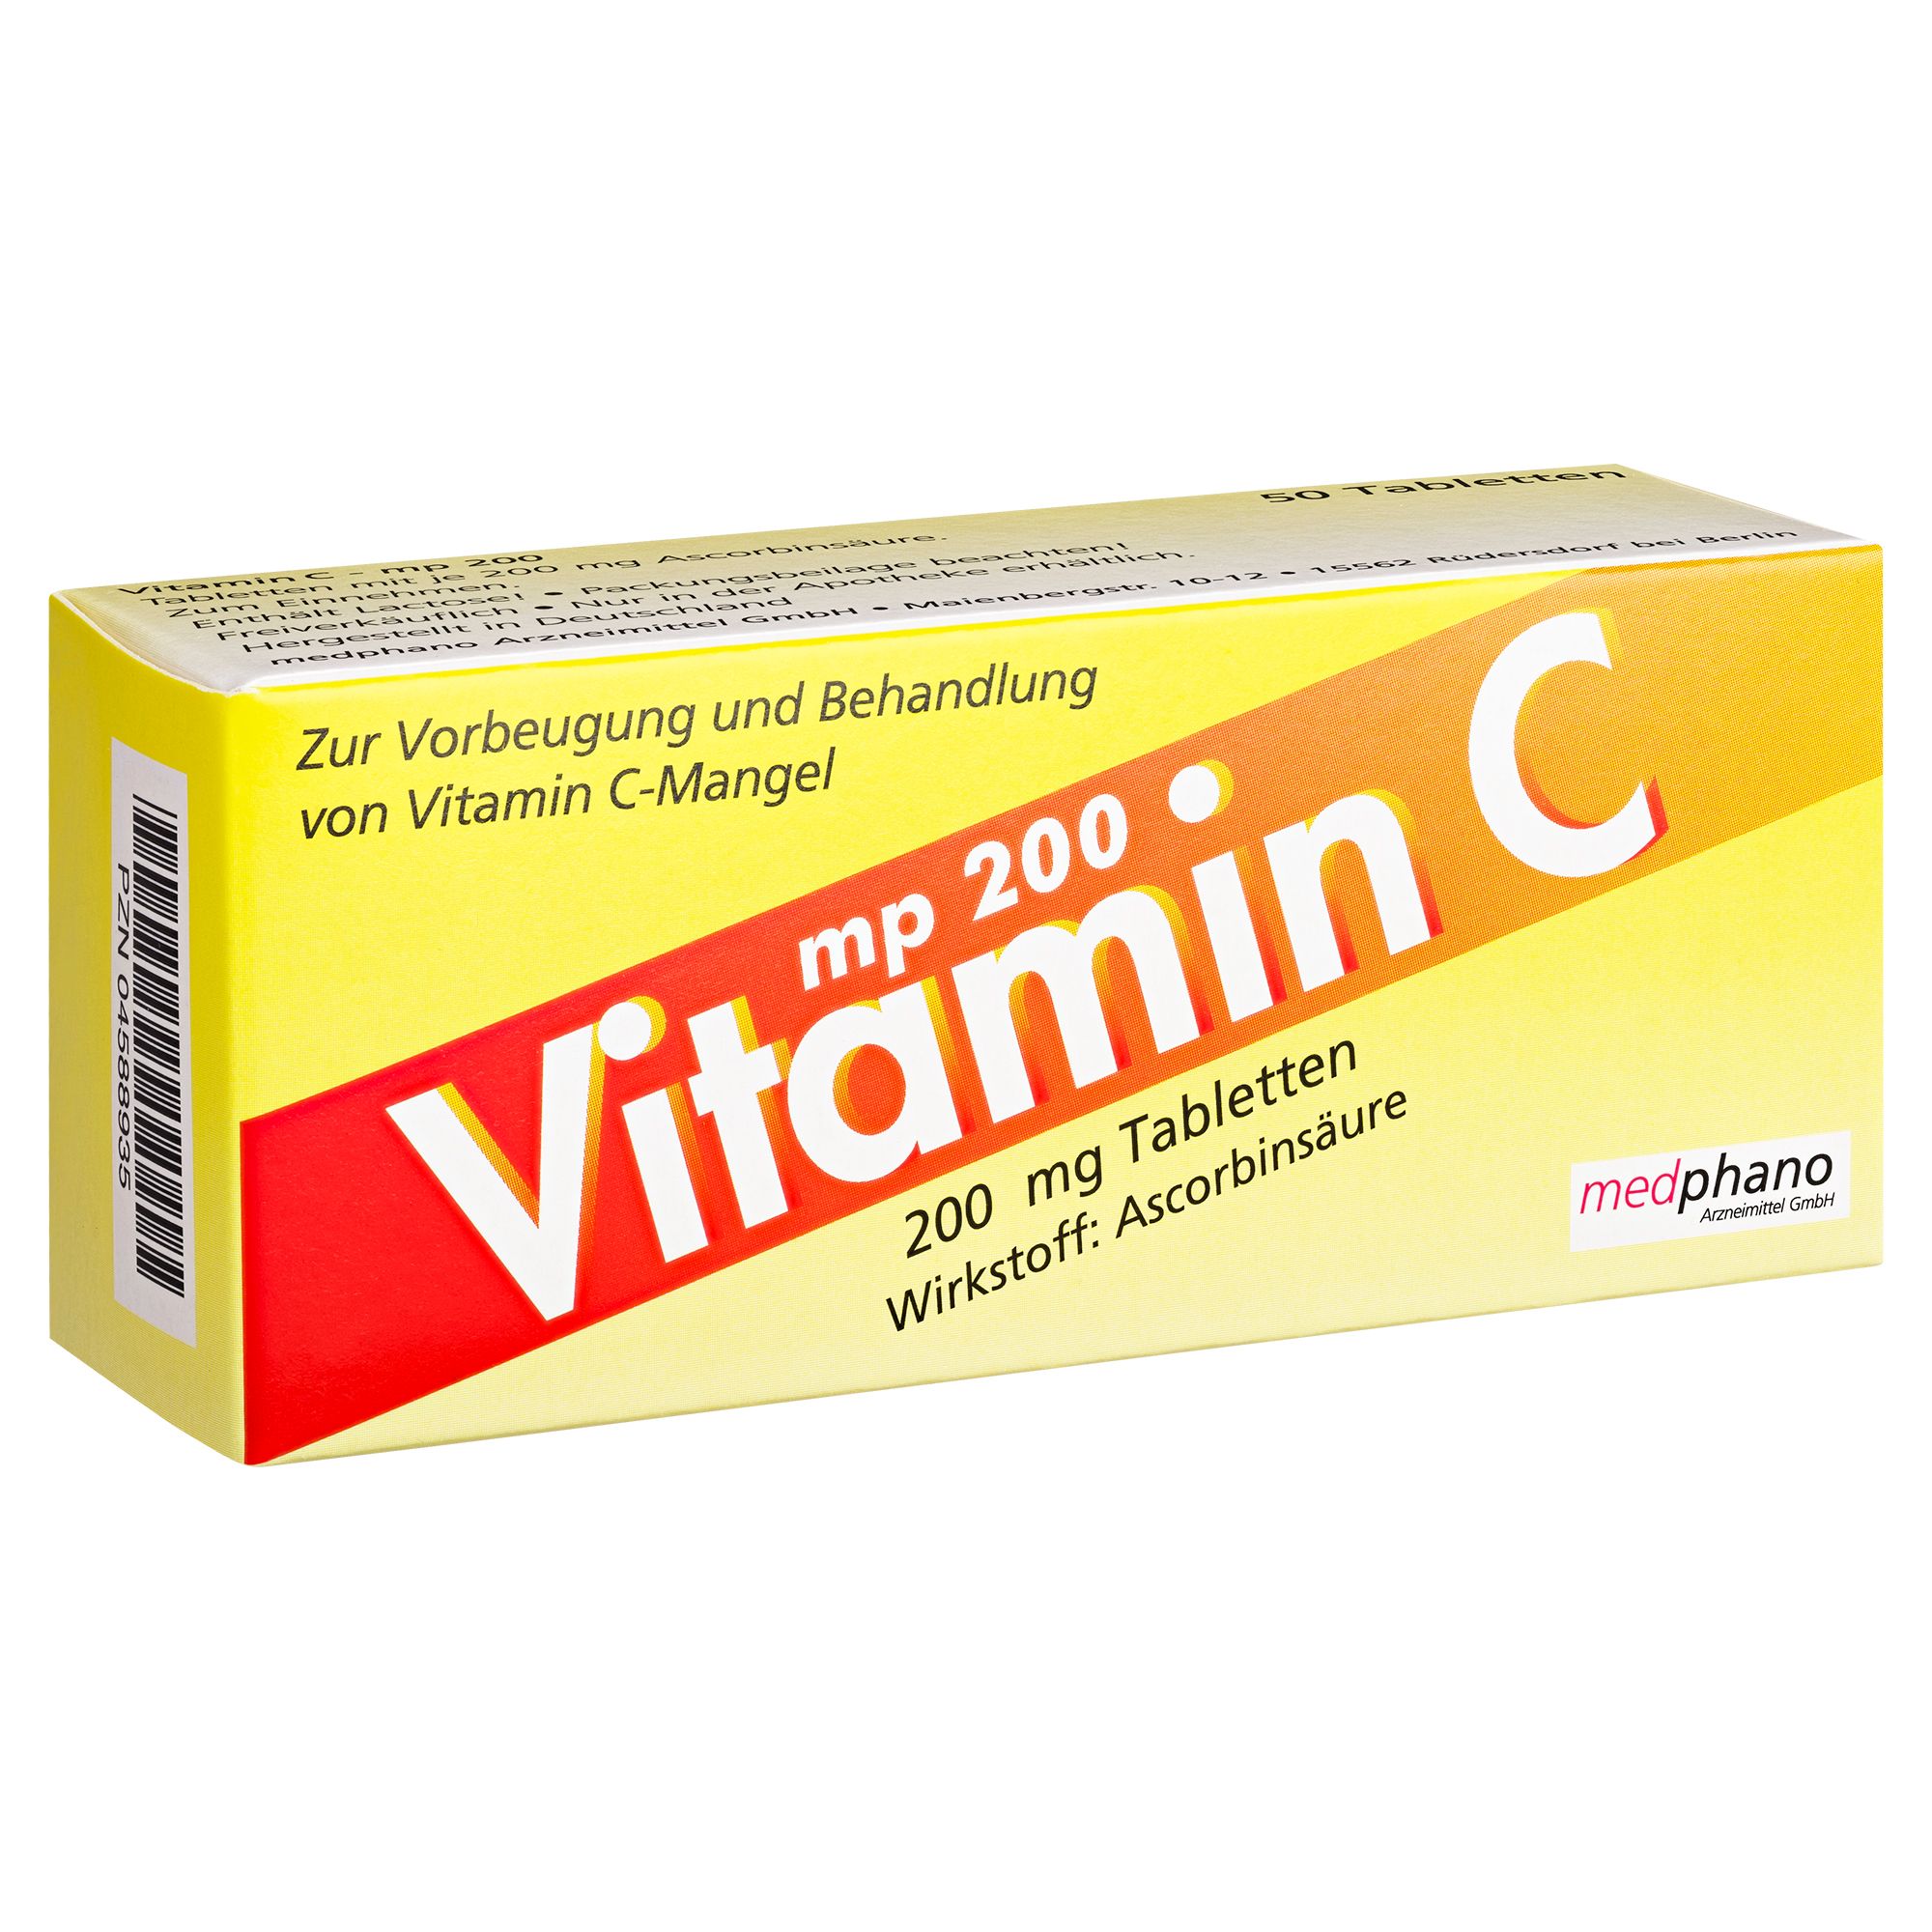 Vitamin C - mp 200